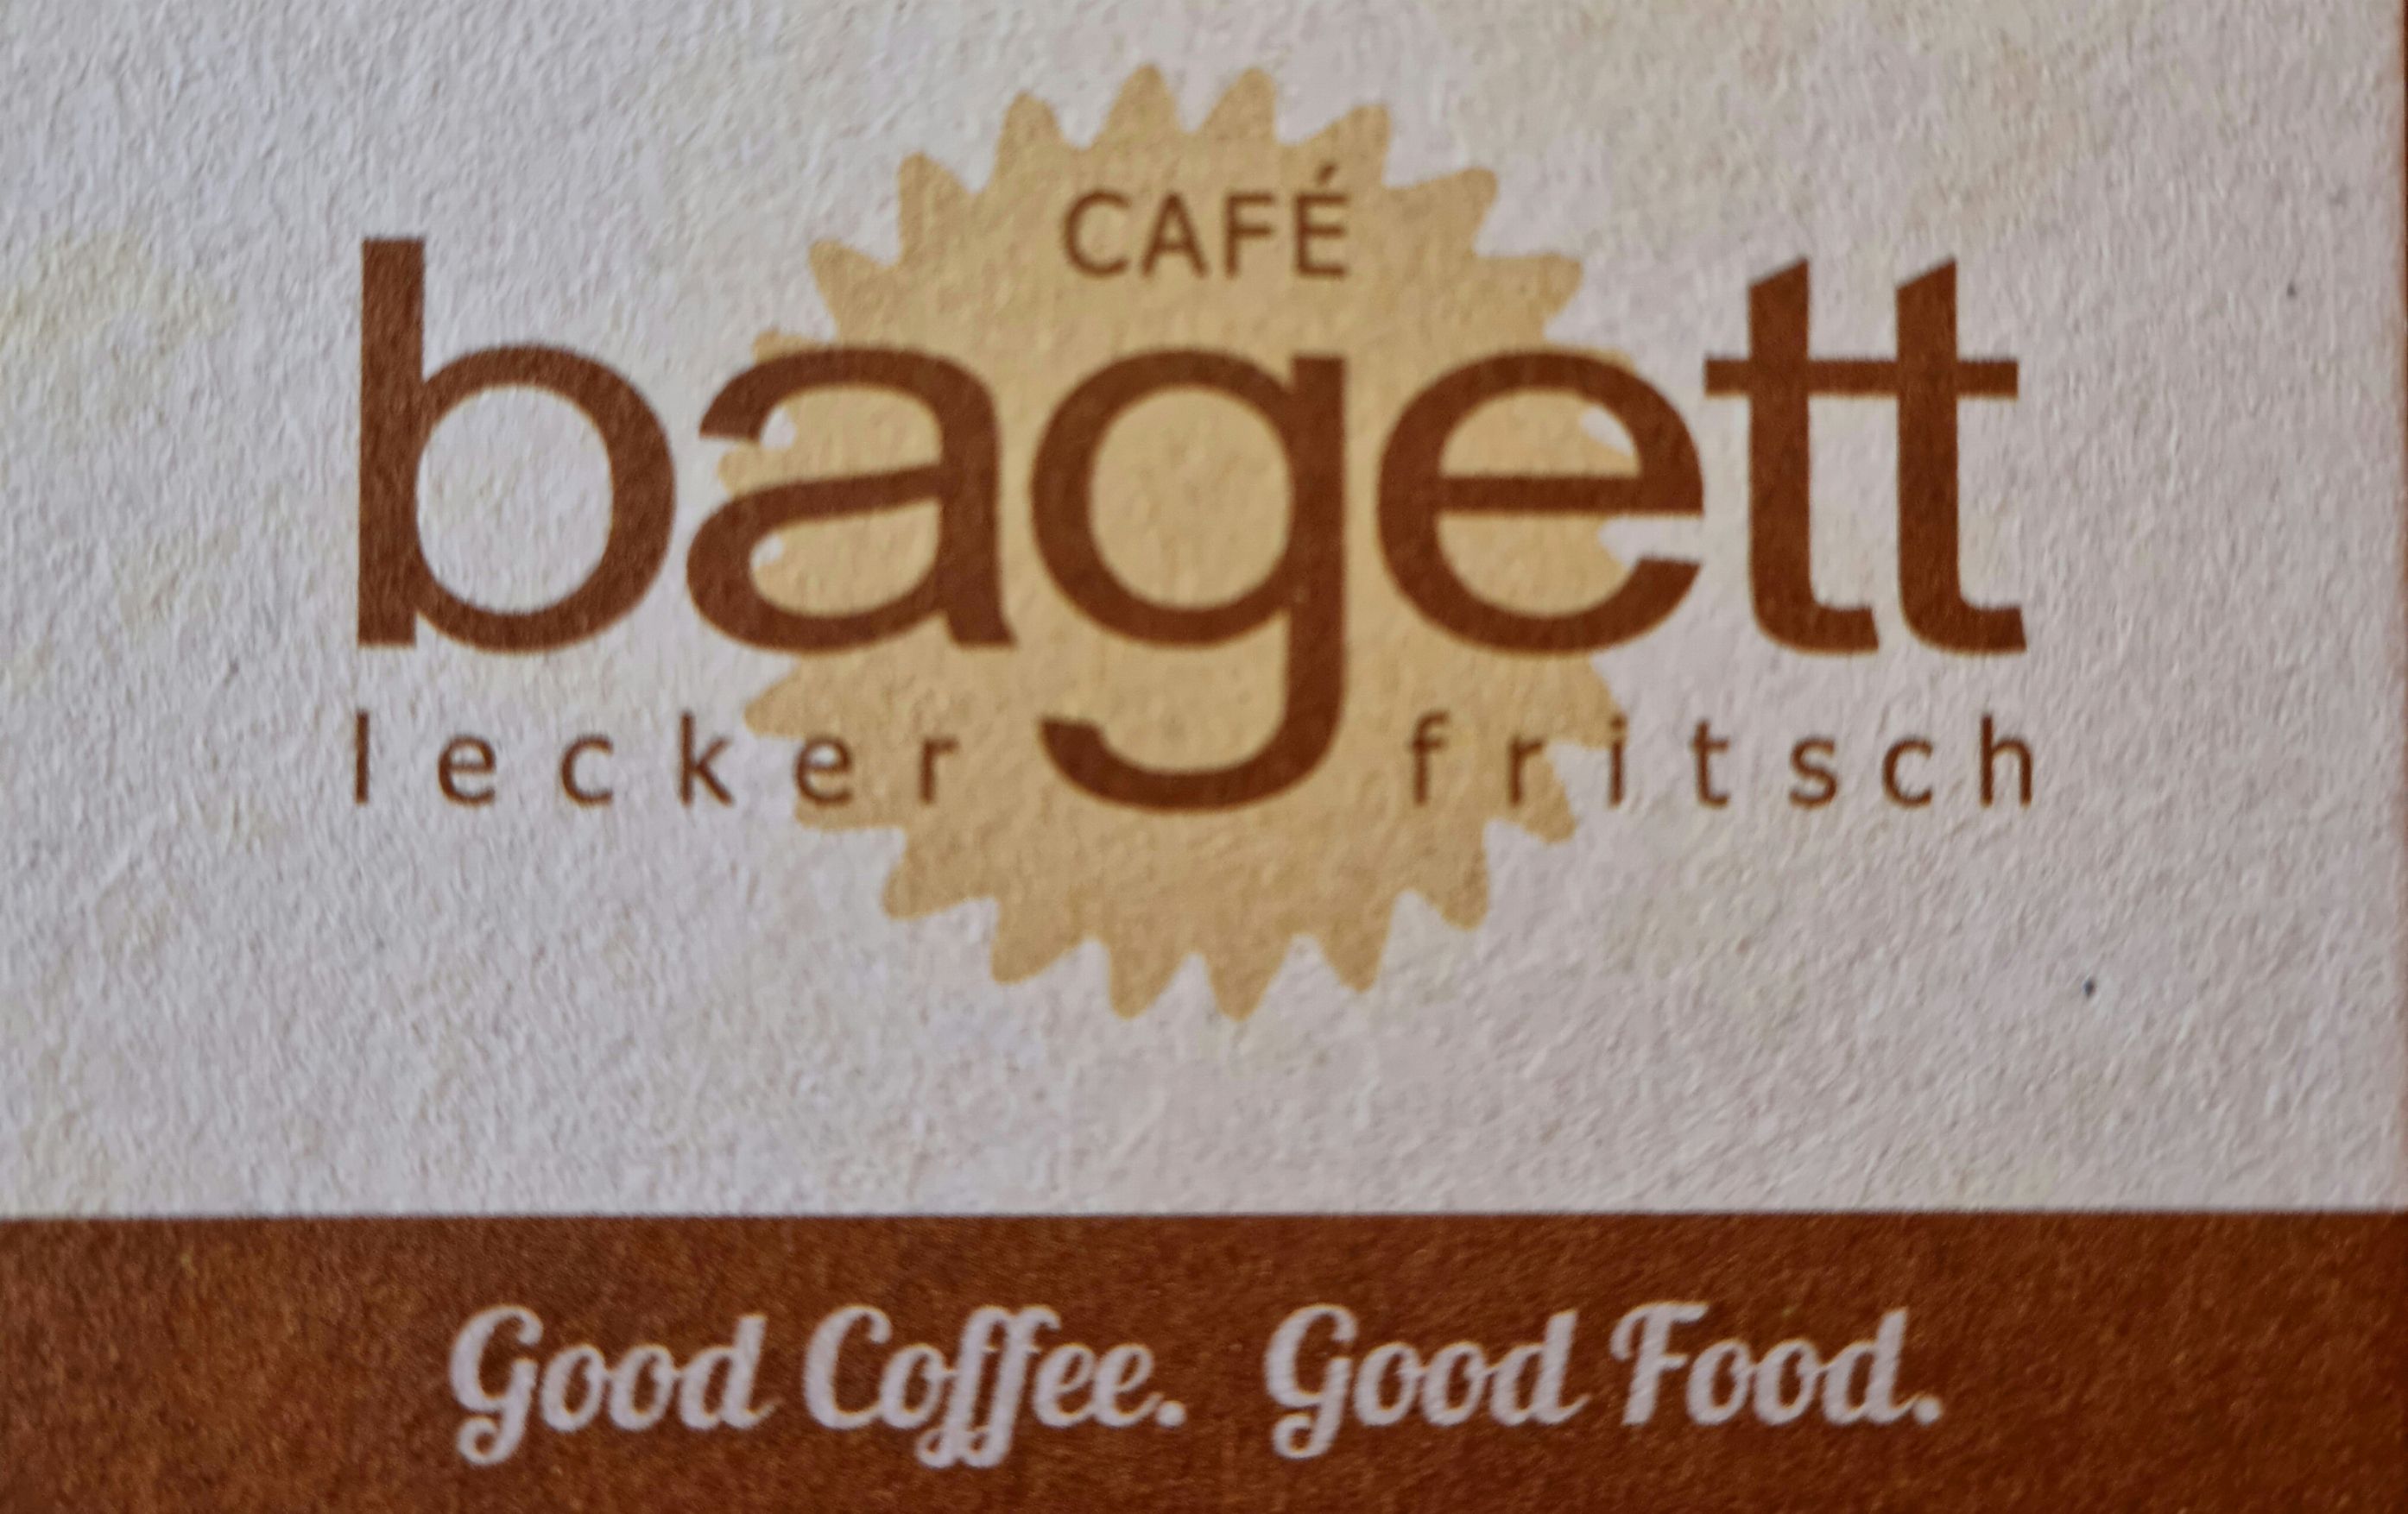 Cafe bagett